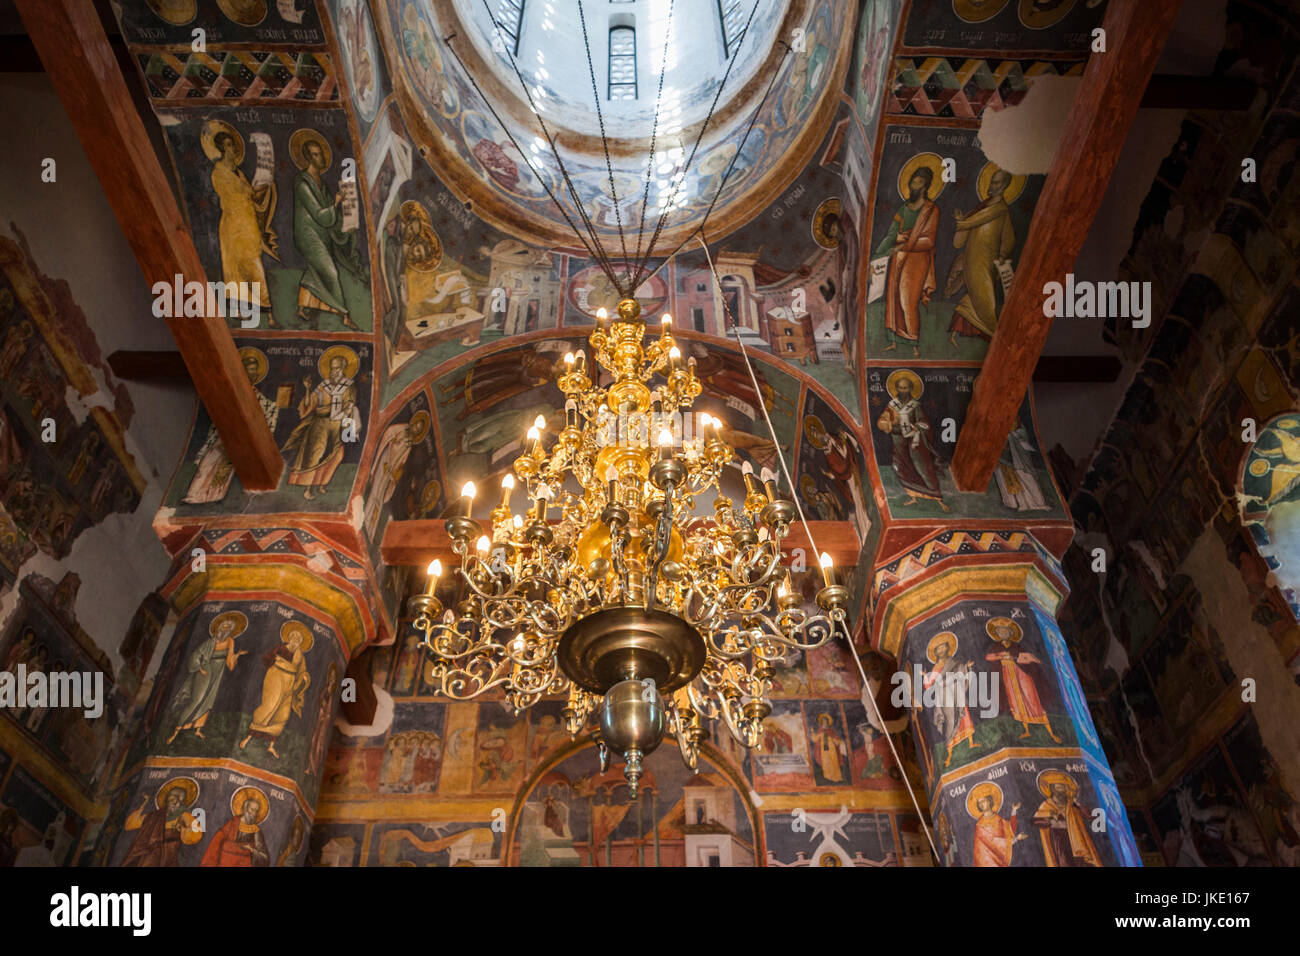 Rumänien, Bukarest-Bereich Snagov, Kloster Snagov, letzte Ruhestätte von Vlad Tepes, Vlad der Pfähler, Inneren Fresken Stockfoto